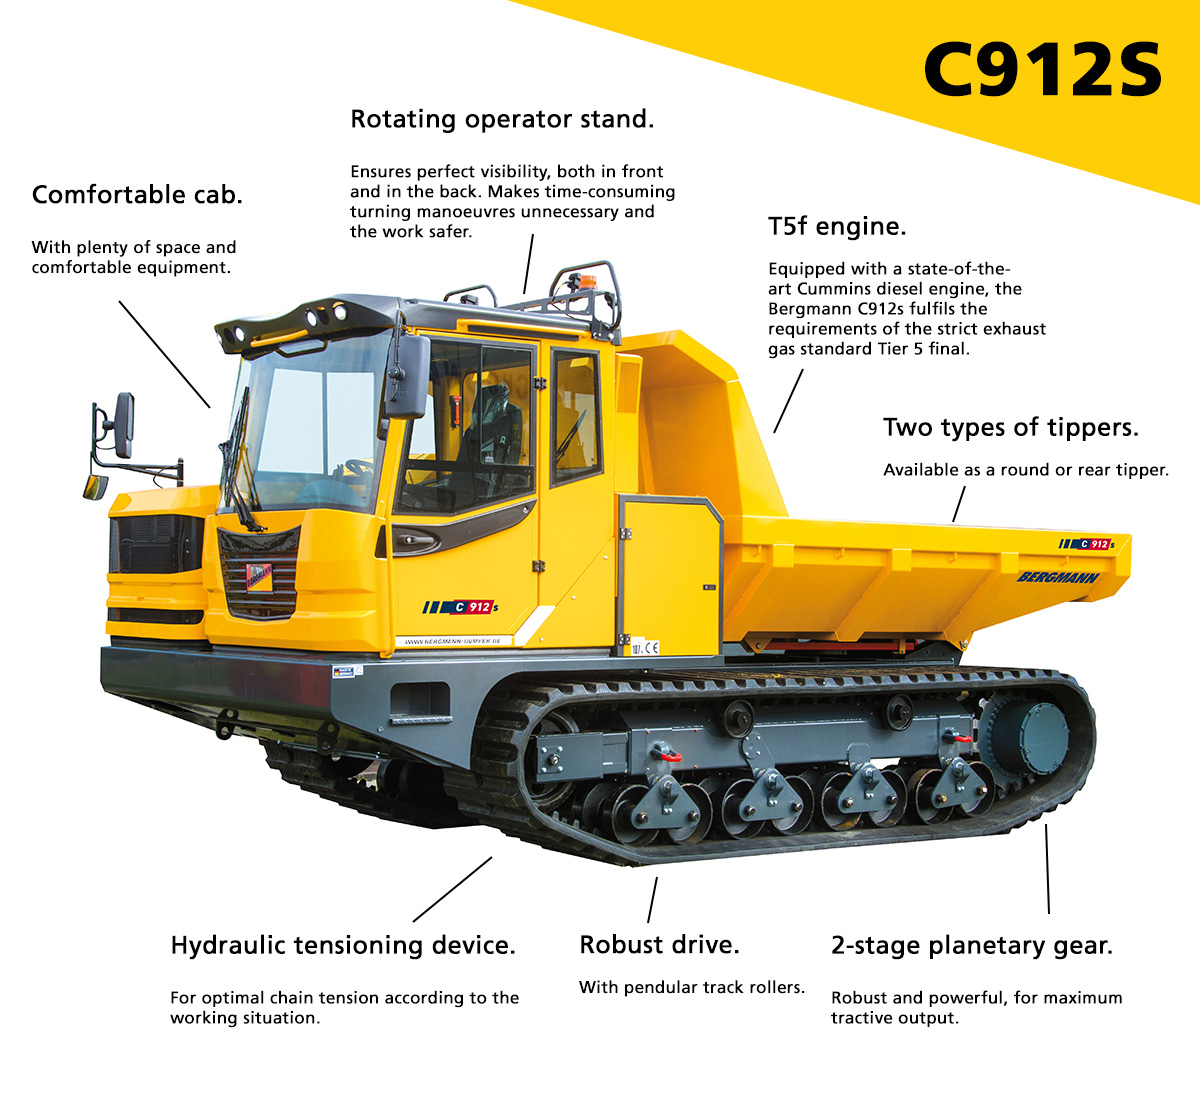 C912s Dumper Features